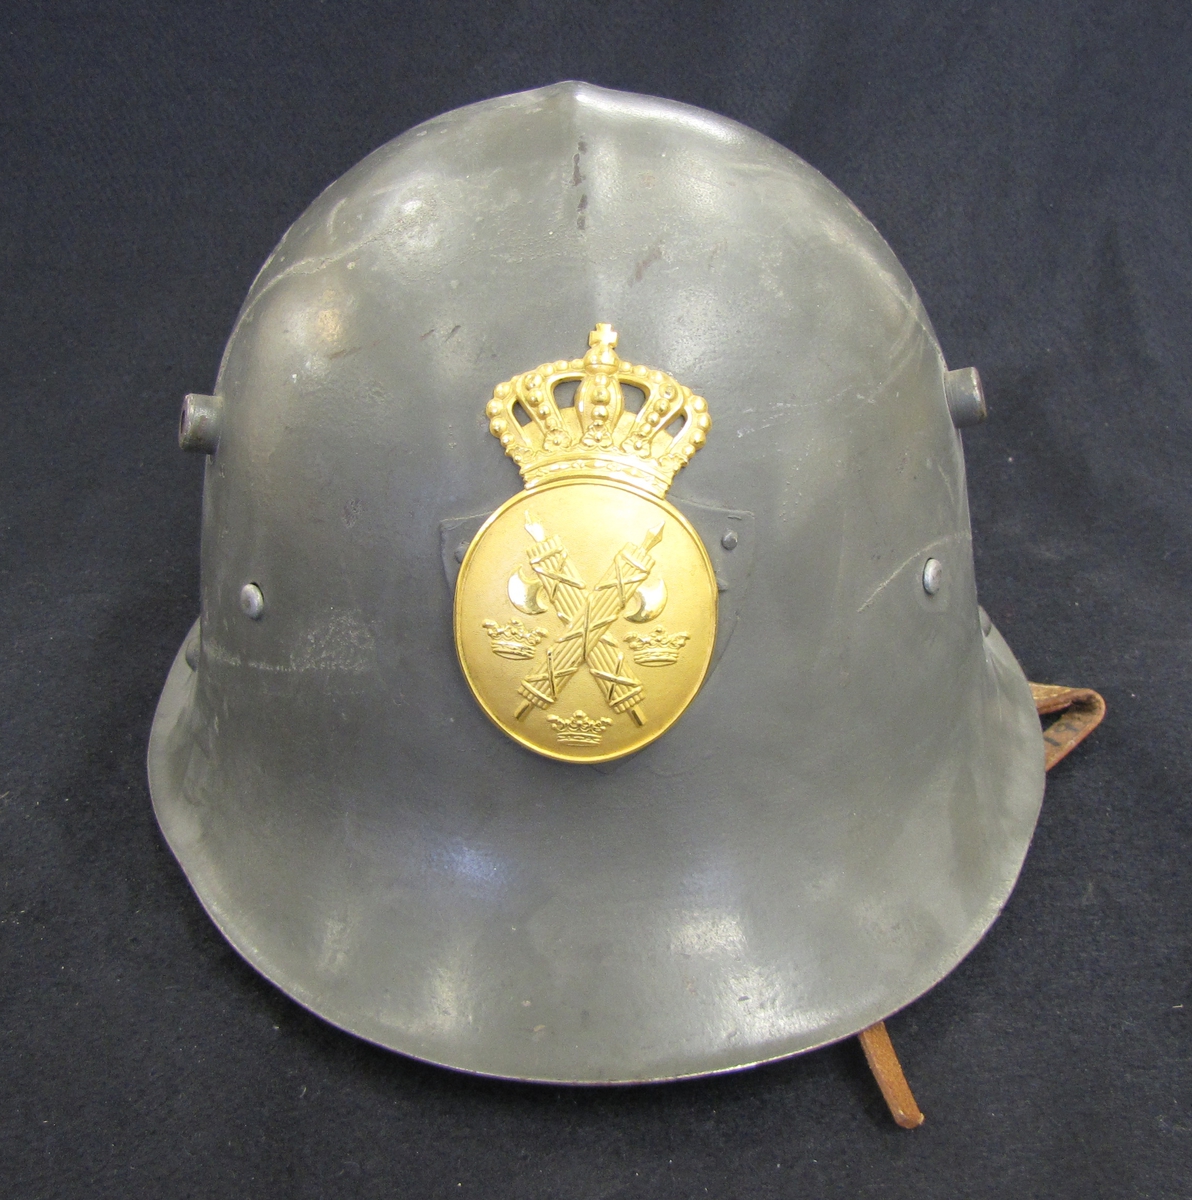 Stålhjälm för polisman (modell 1941). Polisemblem med krona i gulmetall. På emblemet, korslagda fasciner och tre kronor.